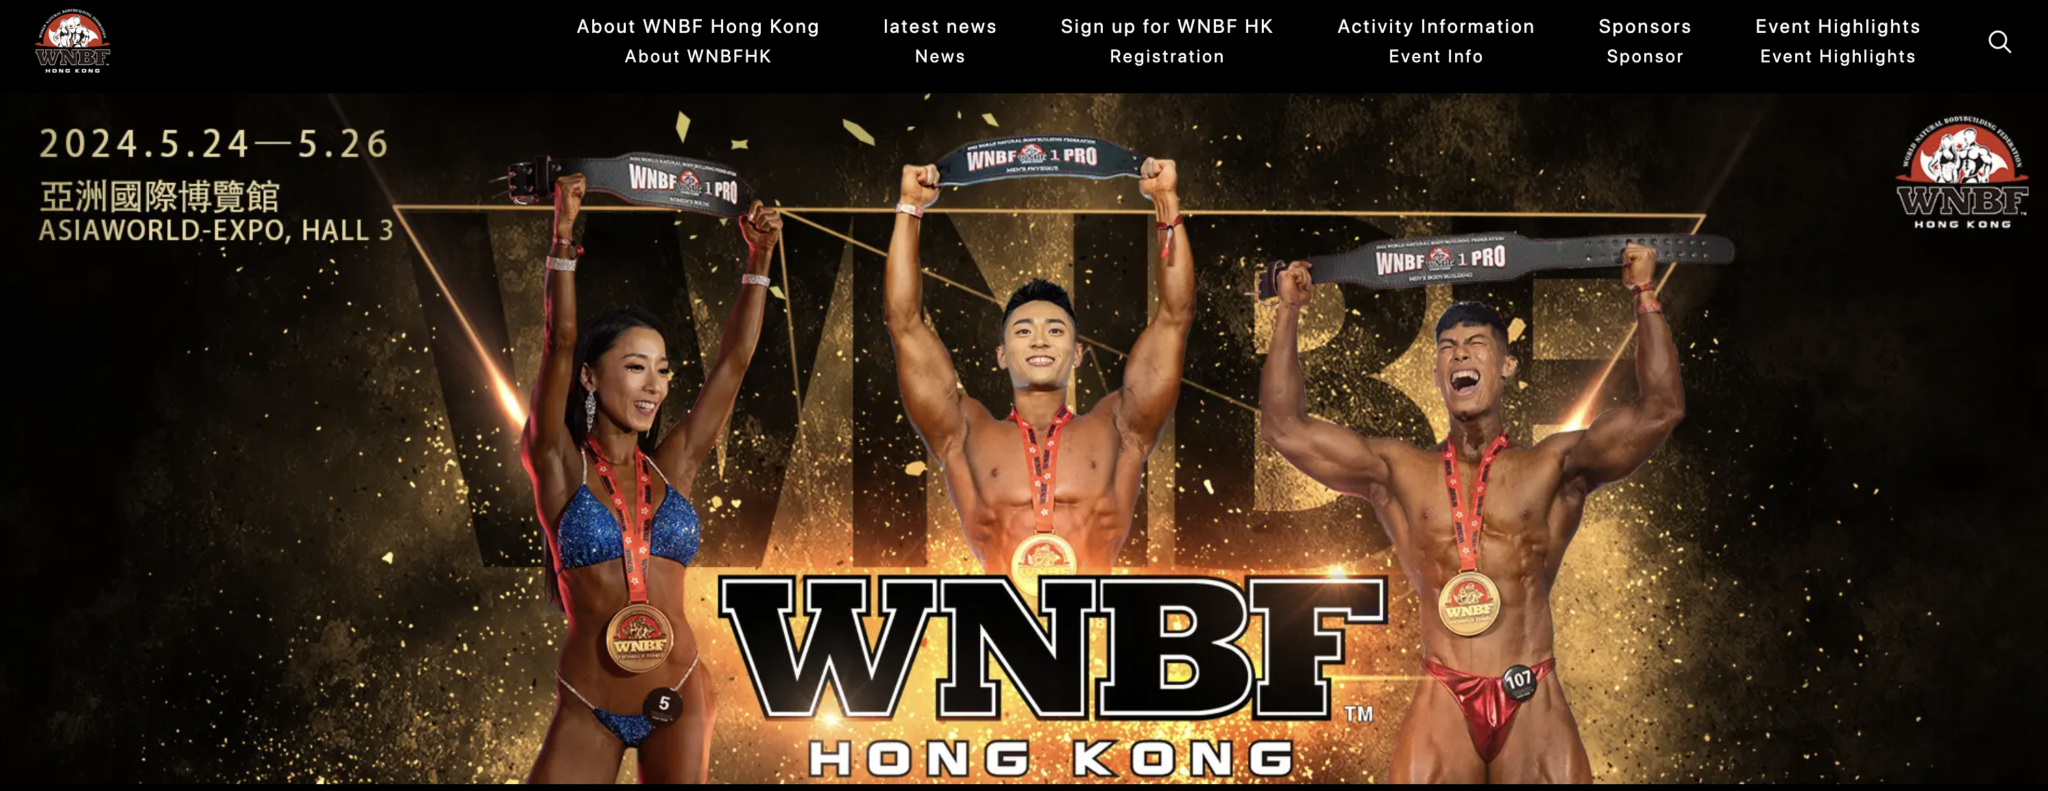 2024 WNBF Hong Kong 2 Presented by Paul Gor & WNBF Hong Kong